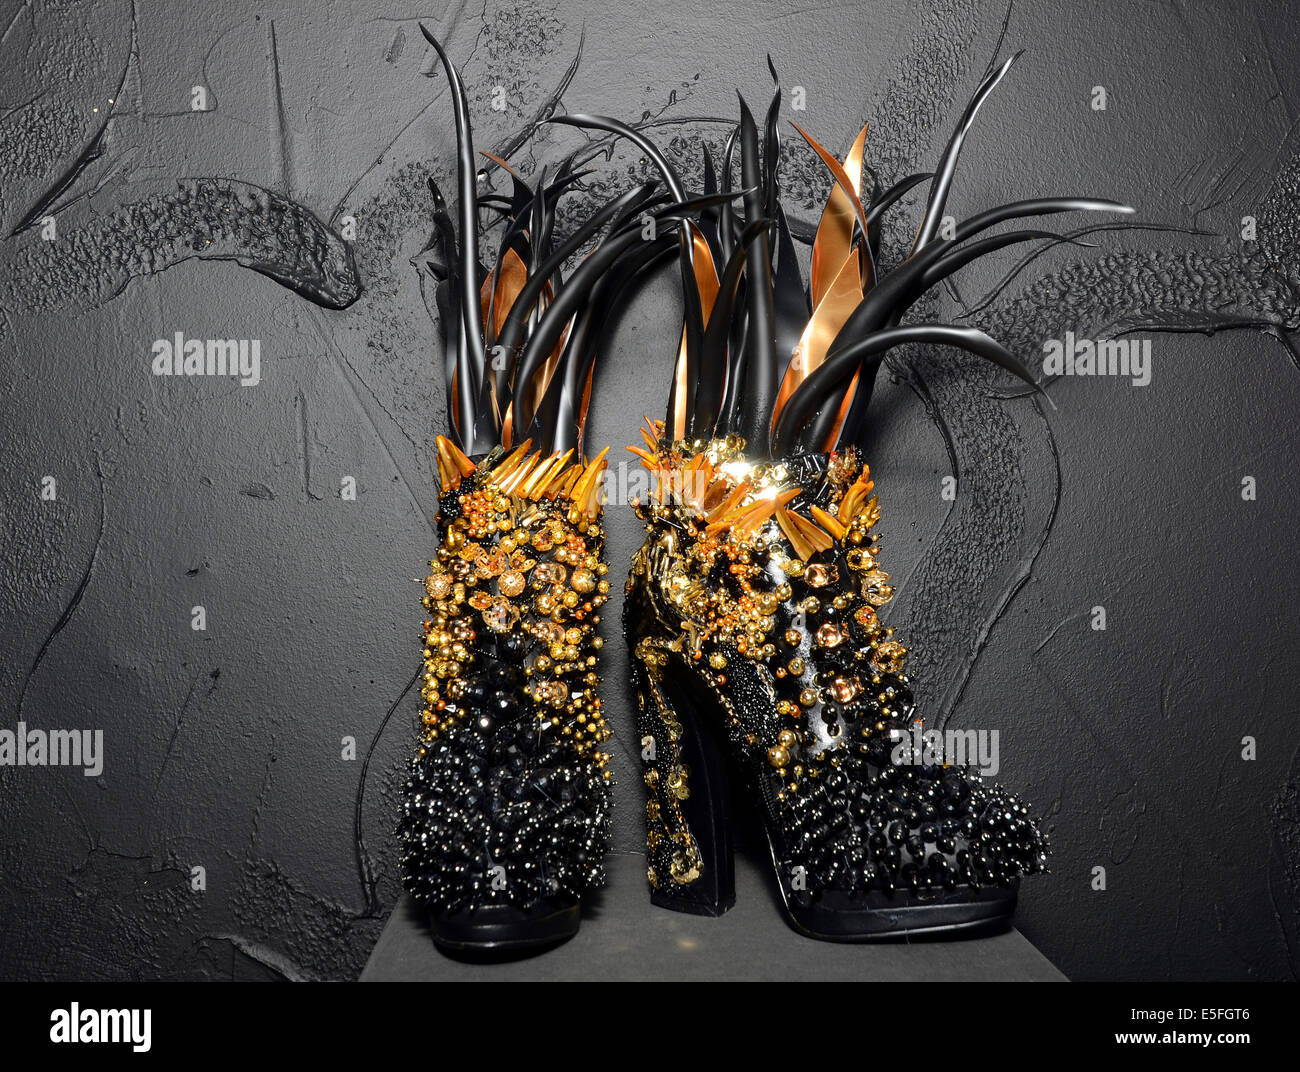 En Dusseldorf, Alemania. El 29 de julio, 2014. Zapatos por el artista y  diseñador Svenja Ritter son vistos antes de la inauguración de la  exposición "Arte Shoes - zapatos en el arte